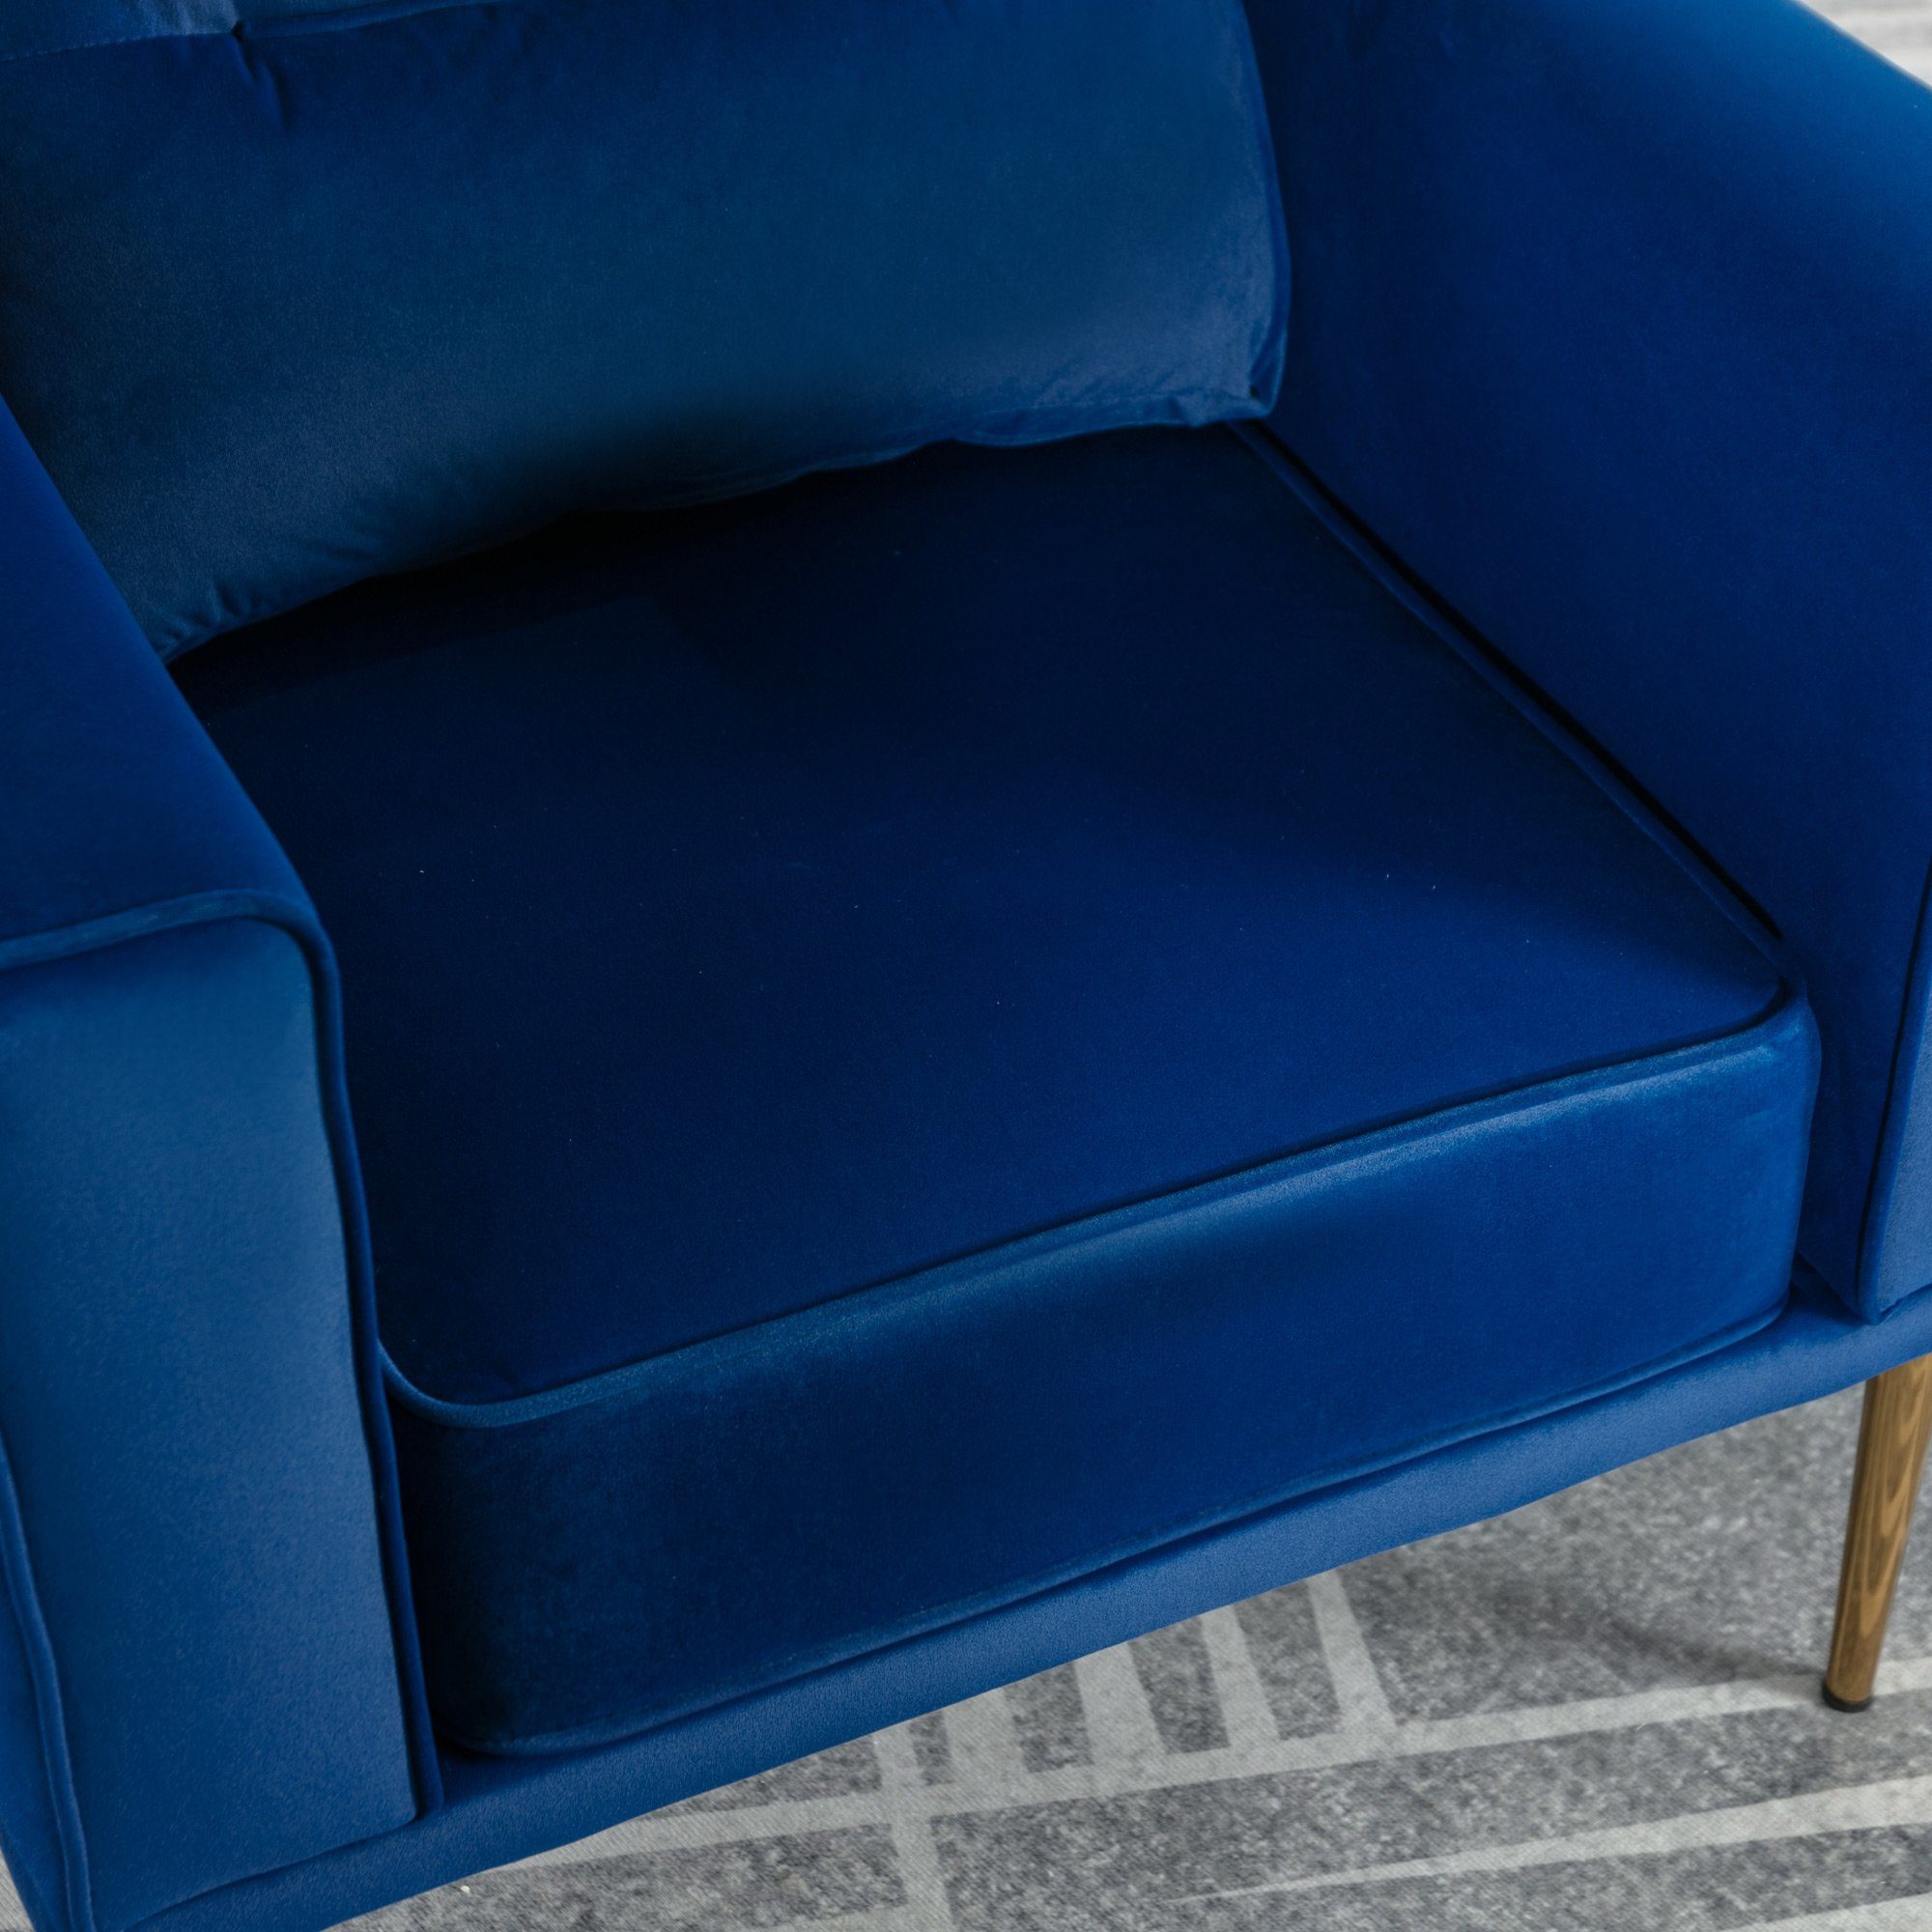 moderner Roségold-Metallbeine, Fernsehsessel, Sitzkissen Samtstuhl Sessel Sessel blau einfacher Loungesessel, Polster und (lässiger Sessel), mit OKWISH